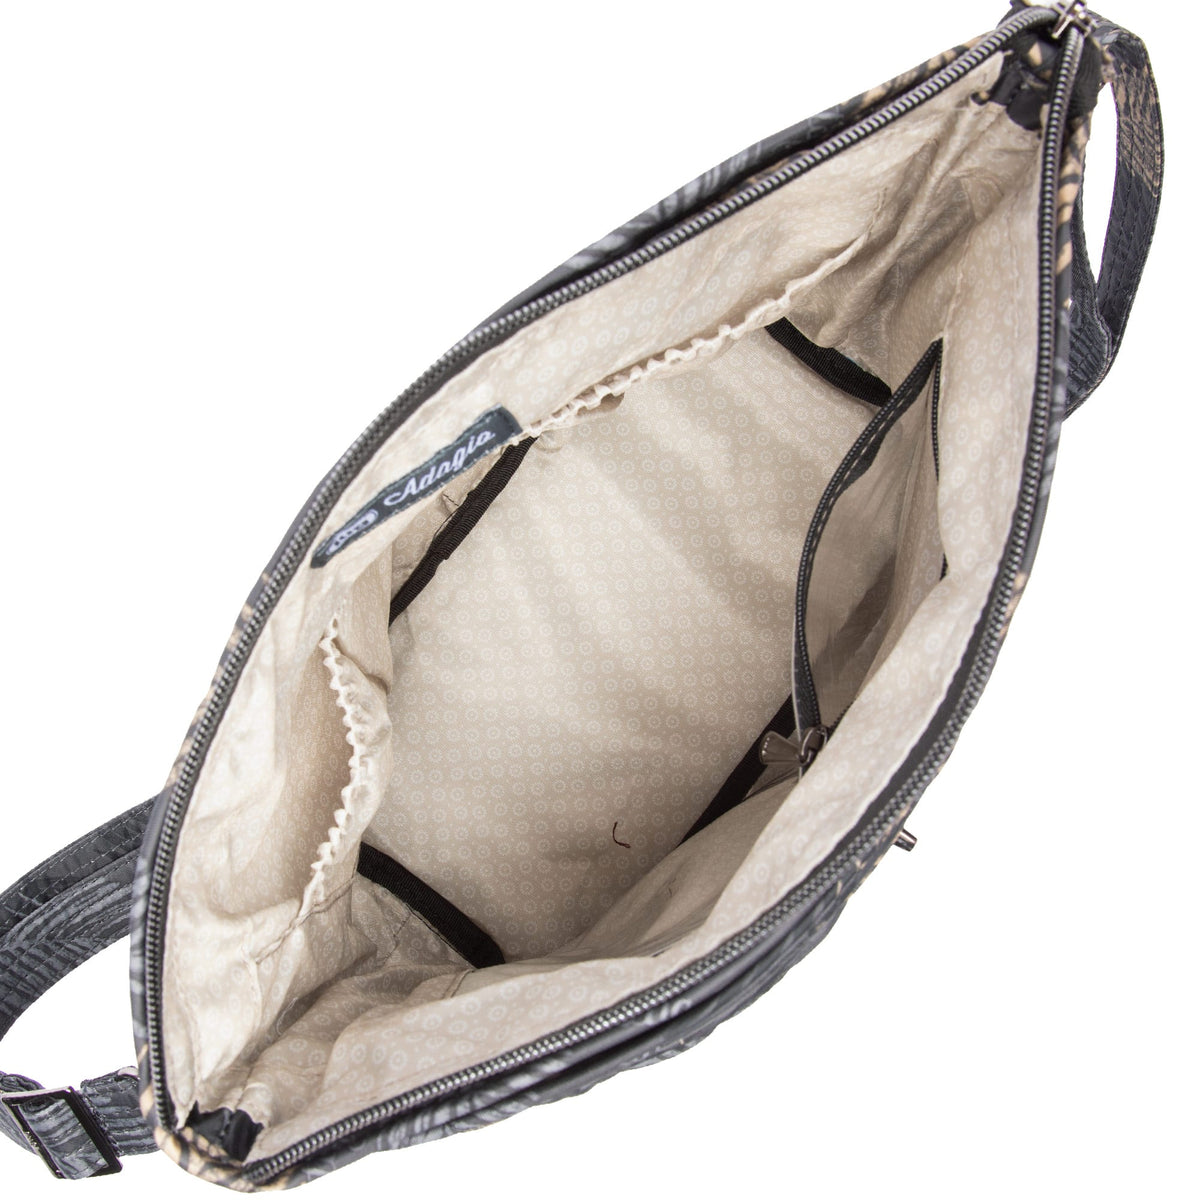 Adagio Shoulder Bag - Luglife.com